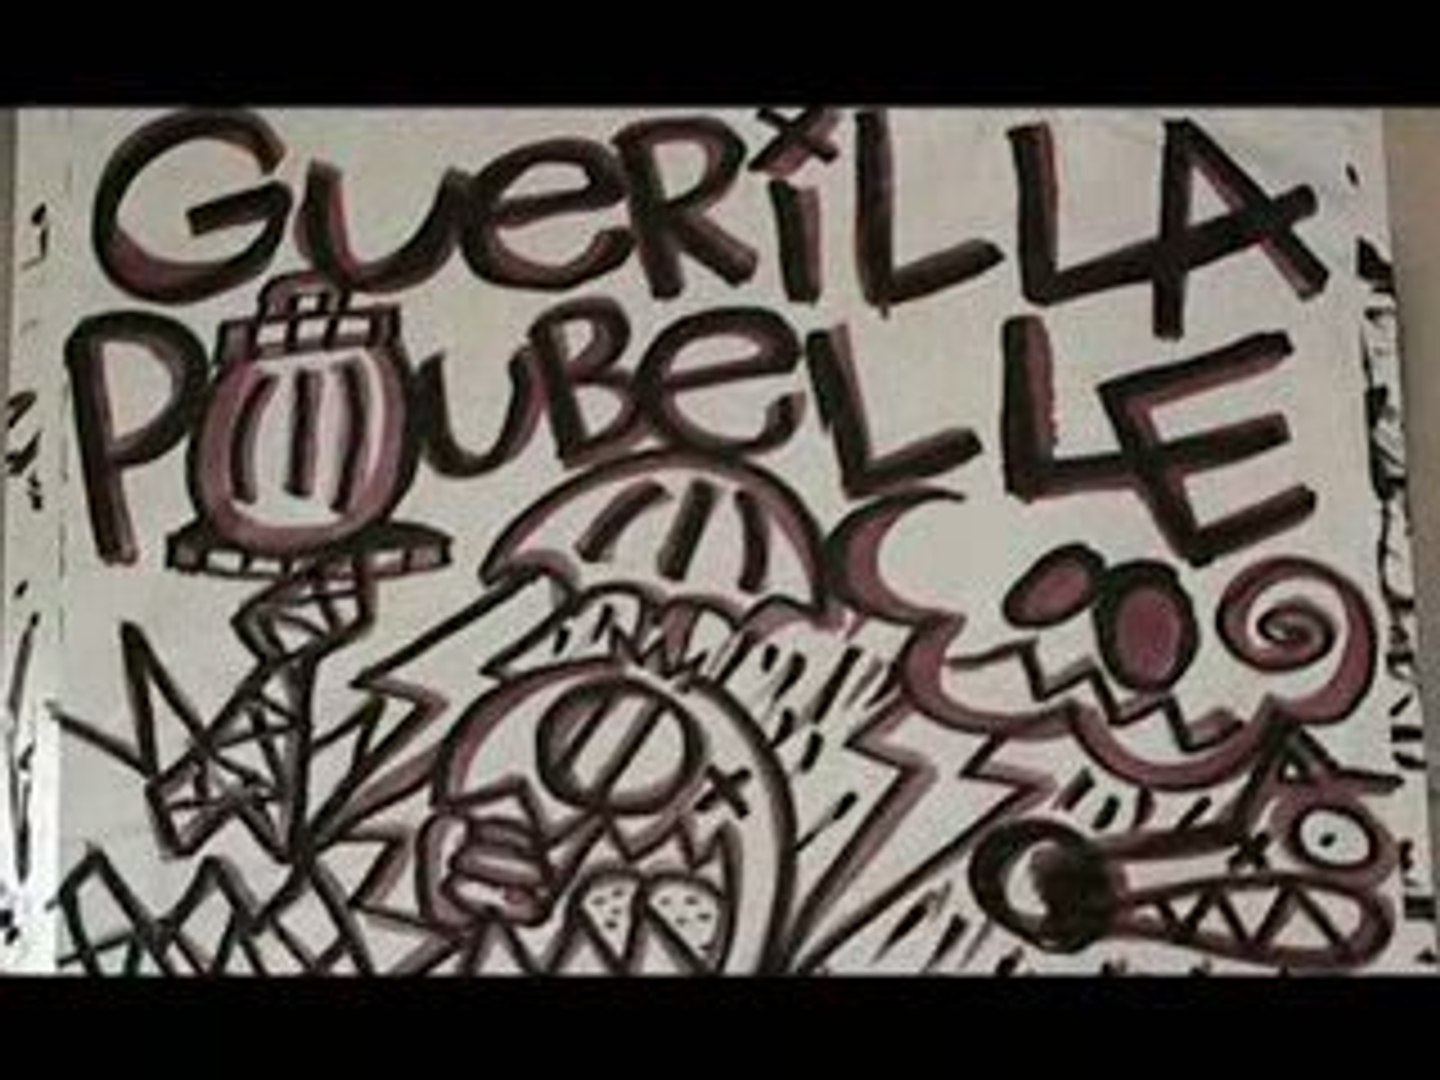 Guerilla Poubelle - Demain il pleut - Vidéo Dailymotion